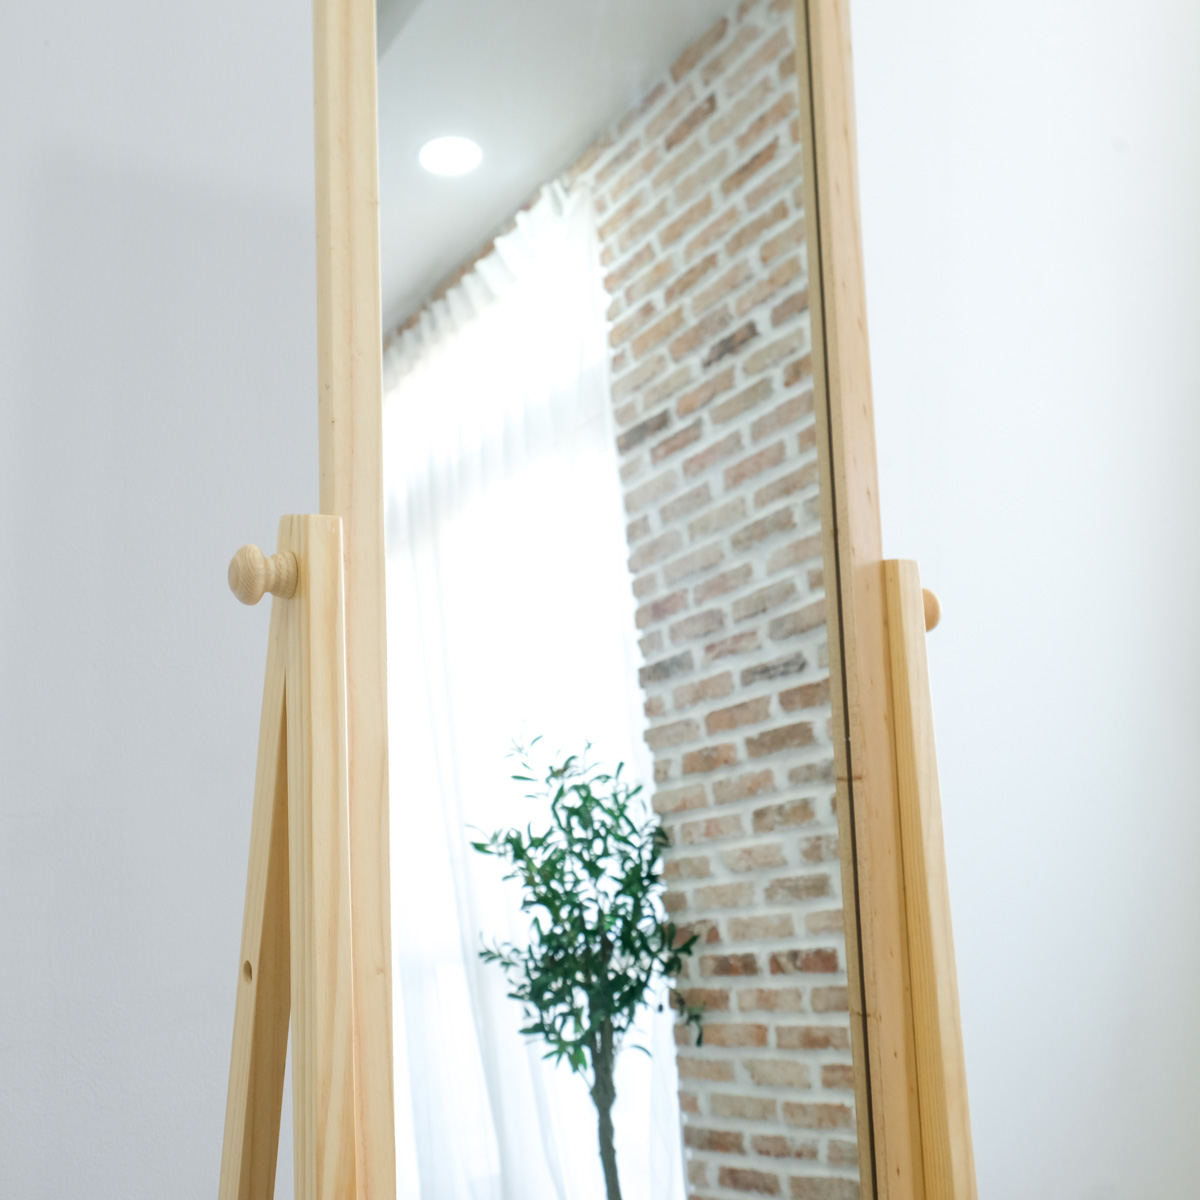 Gương Soi Toàn Thân BEYOURs Khung Gỗ Phối Kệ - Shelf-Mirror - Nội Thất Phòng Khách, Phòng Ngủ